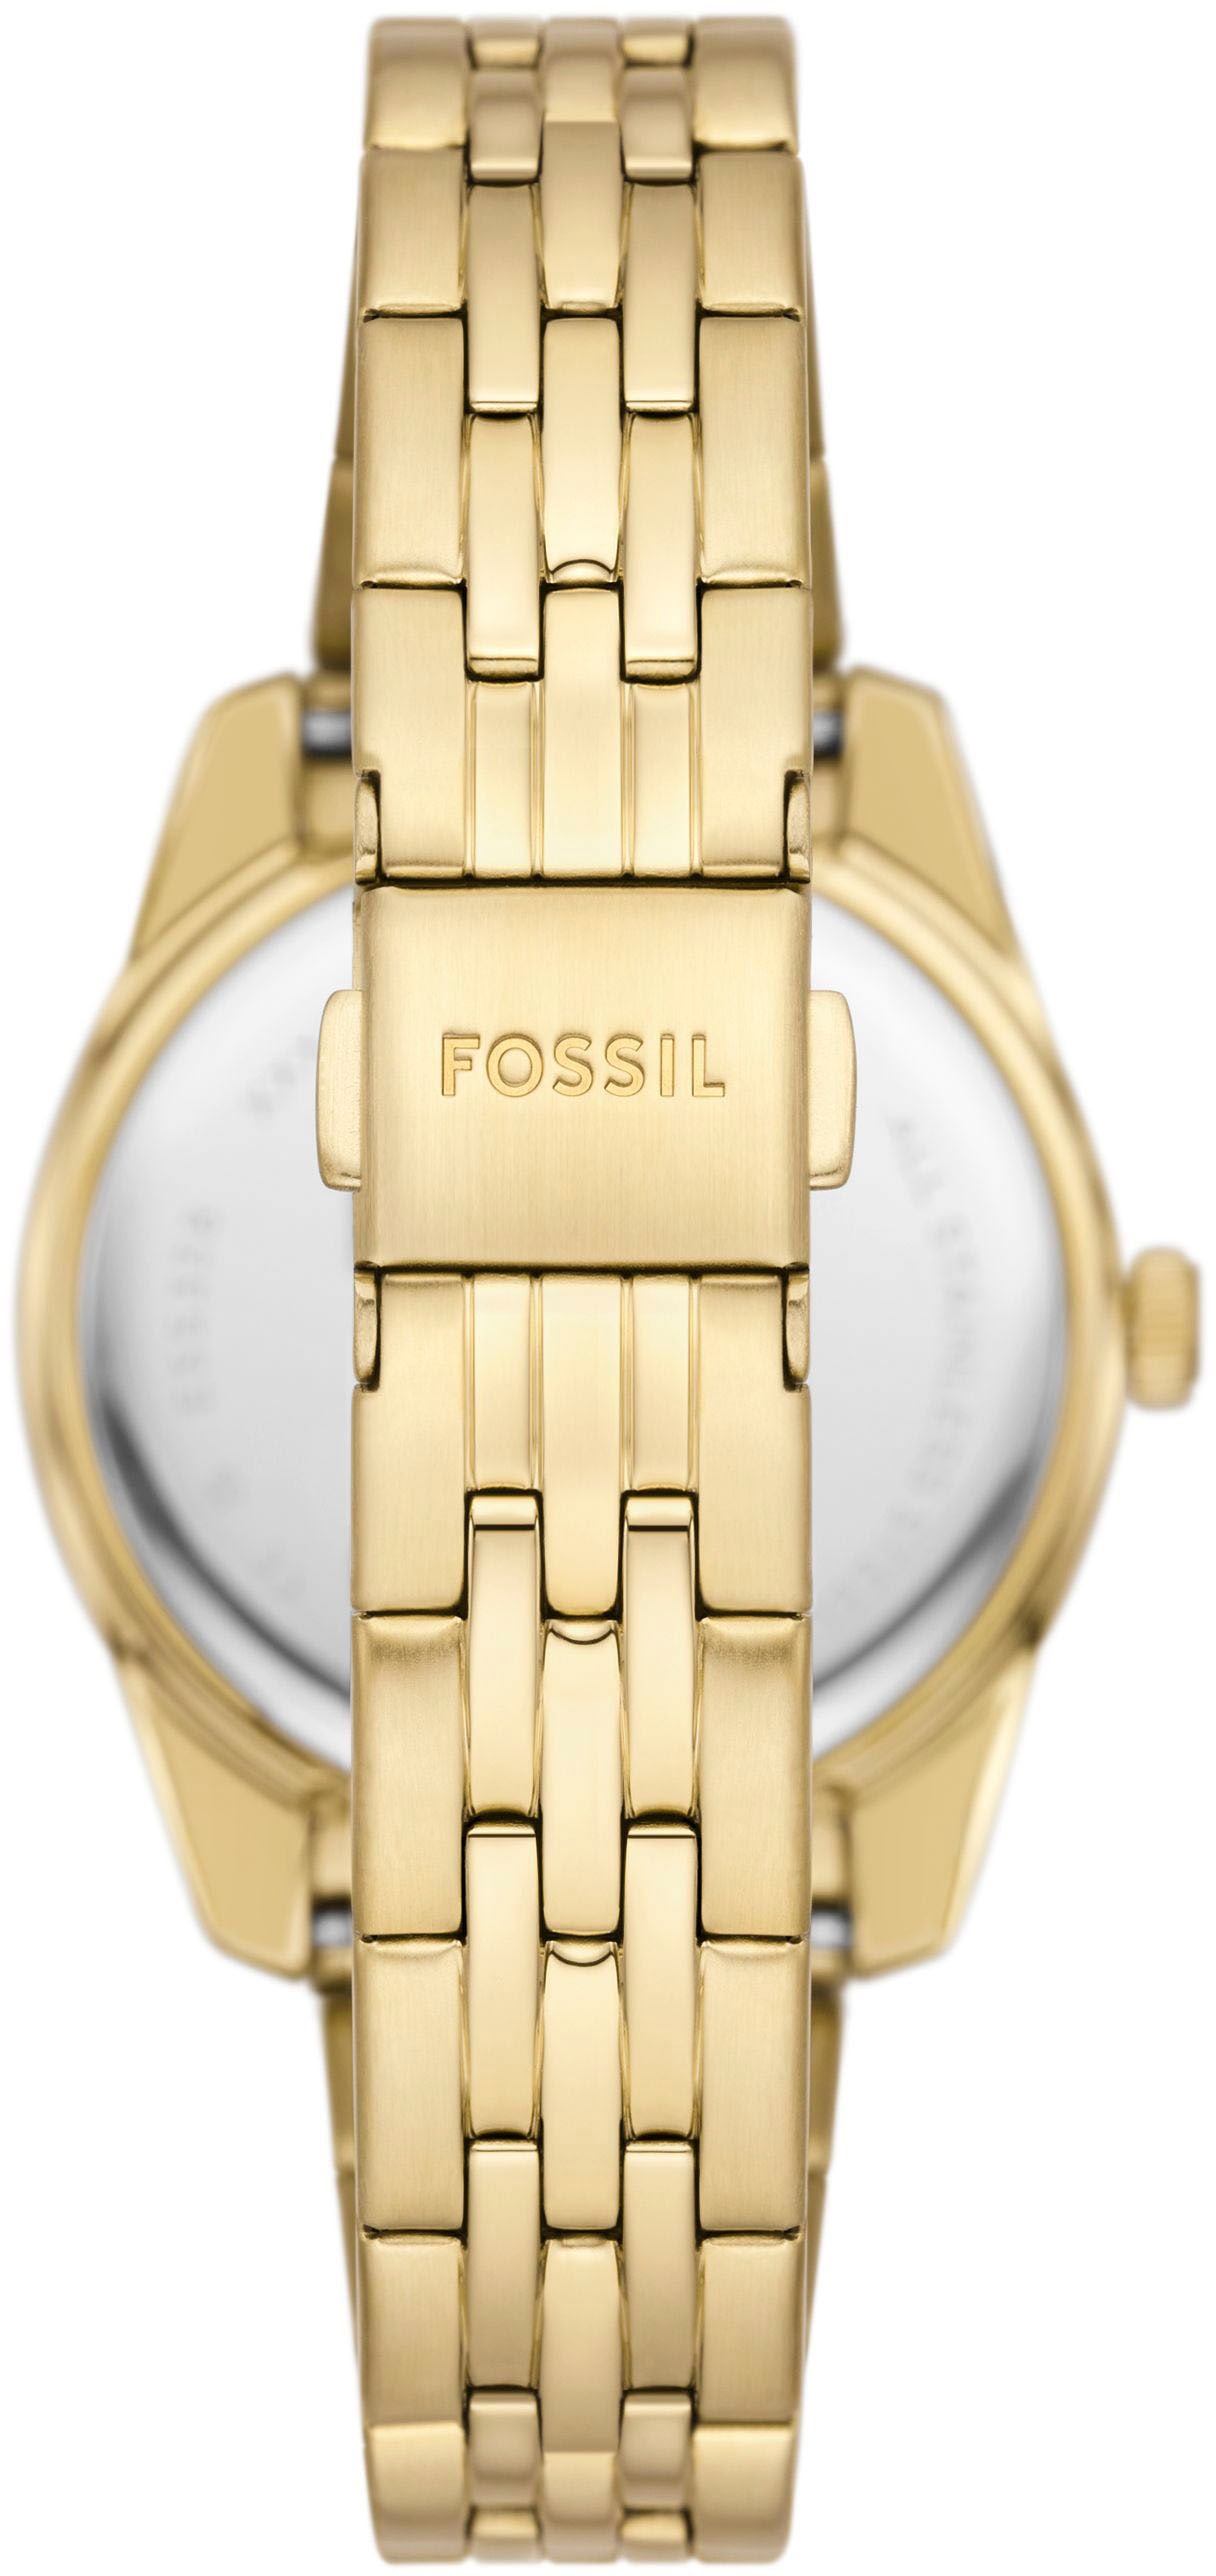 Fossil Quarzuhr »SCARLETTE MINI«, Armbanduhr, Damenuhr, Datum, analog